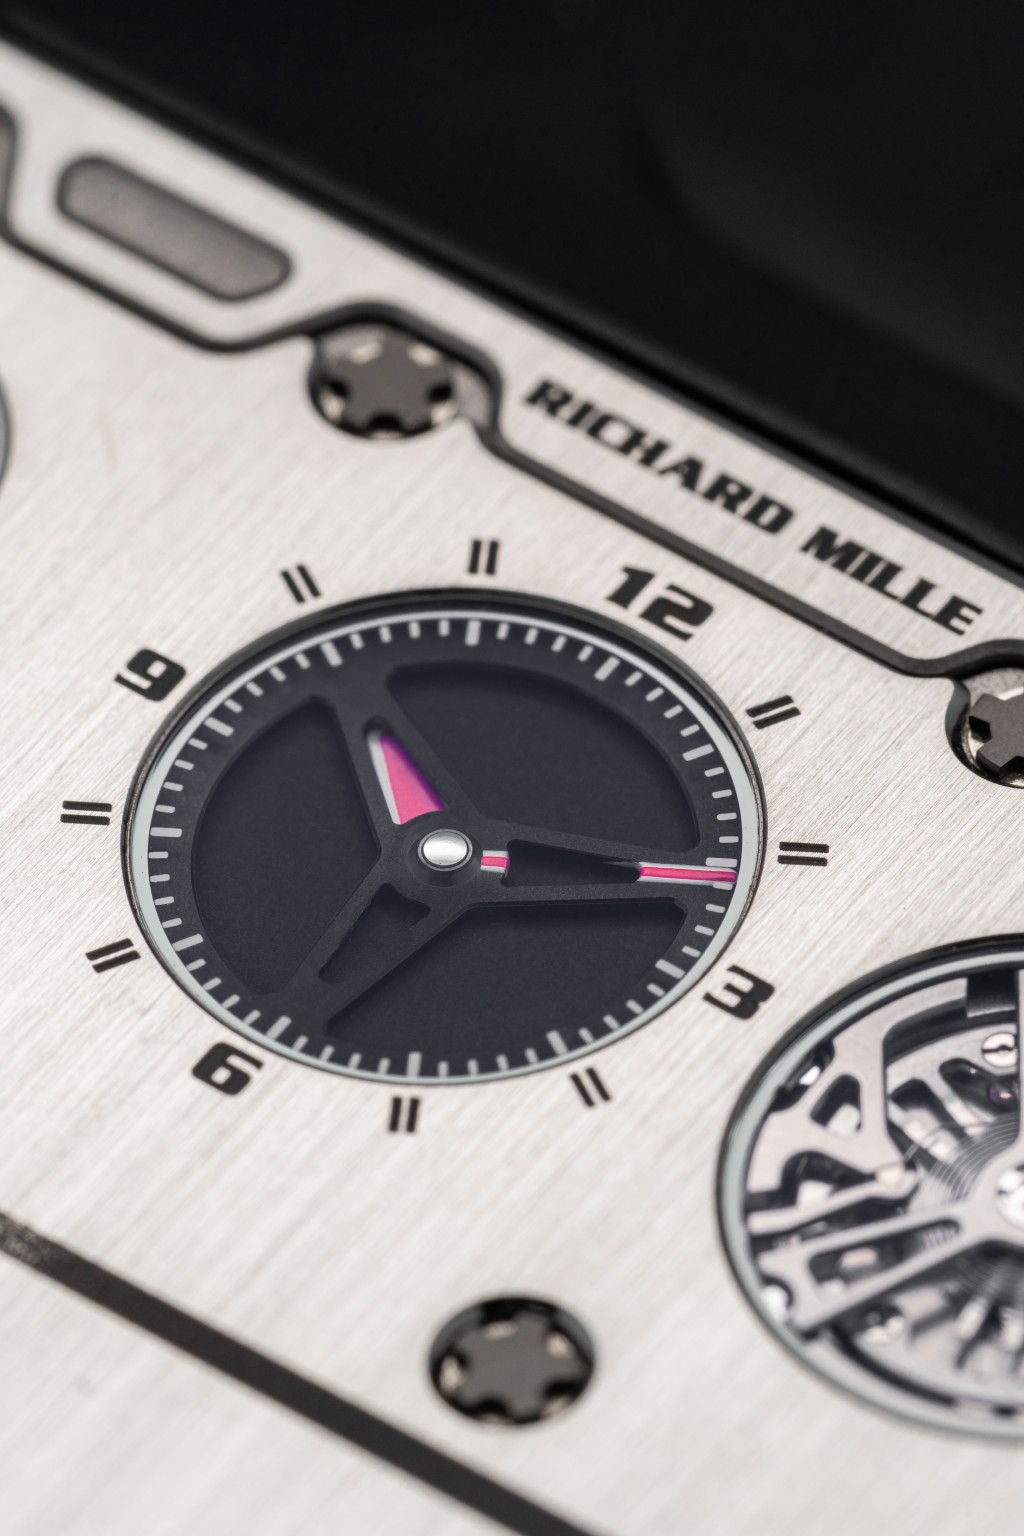 直接以小时和分钟轮代替传统指针指示时间。刻度字款和款式来自法拉利仪表板。